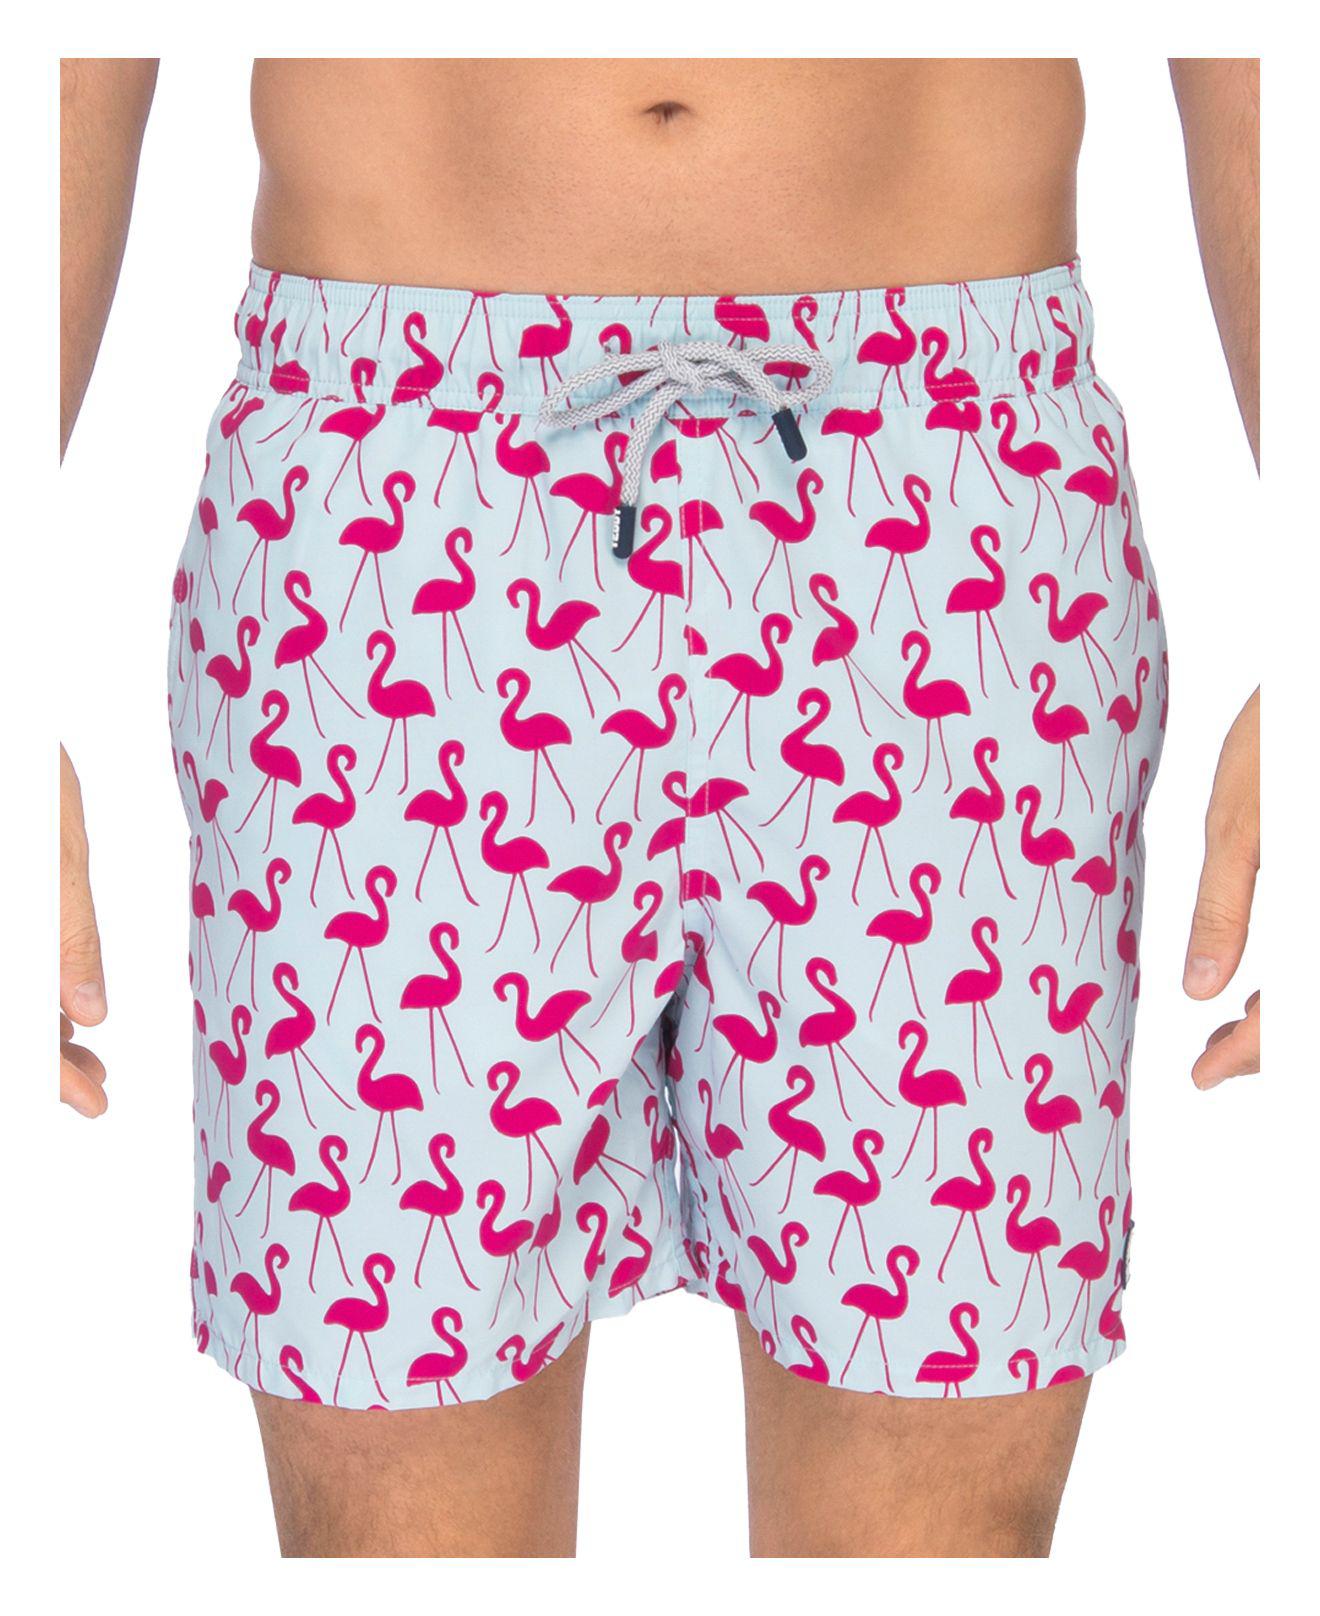 Lyst - Tom & Teddy Flamingo Print Swim Trunks for Men